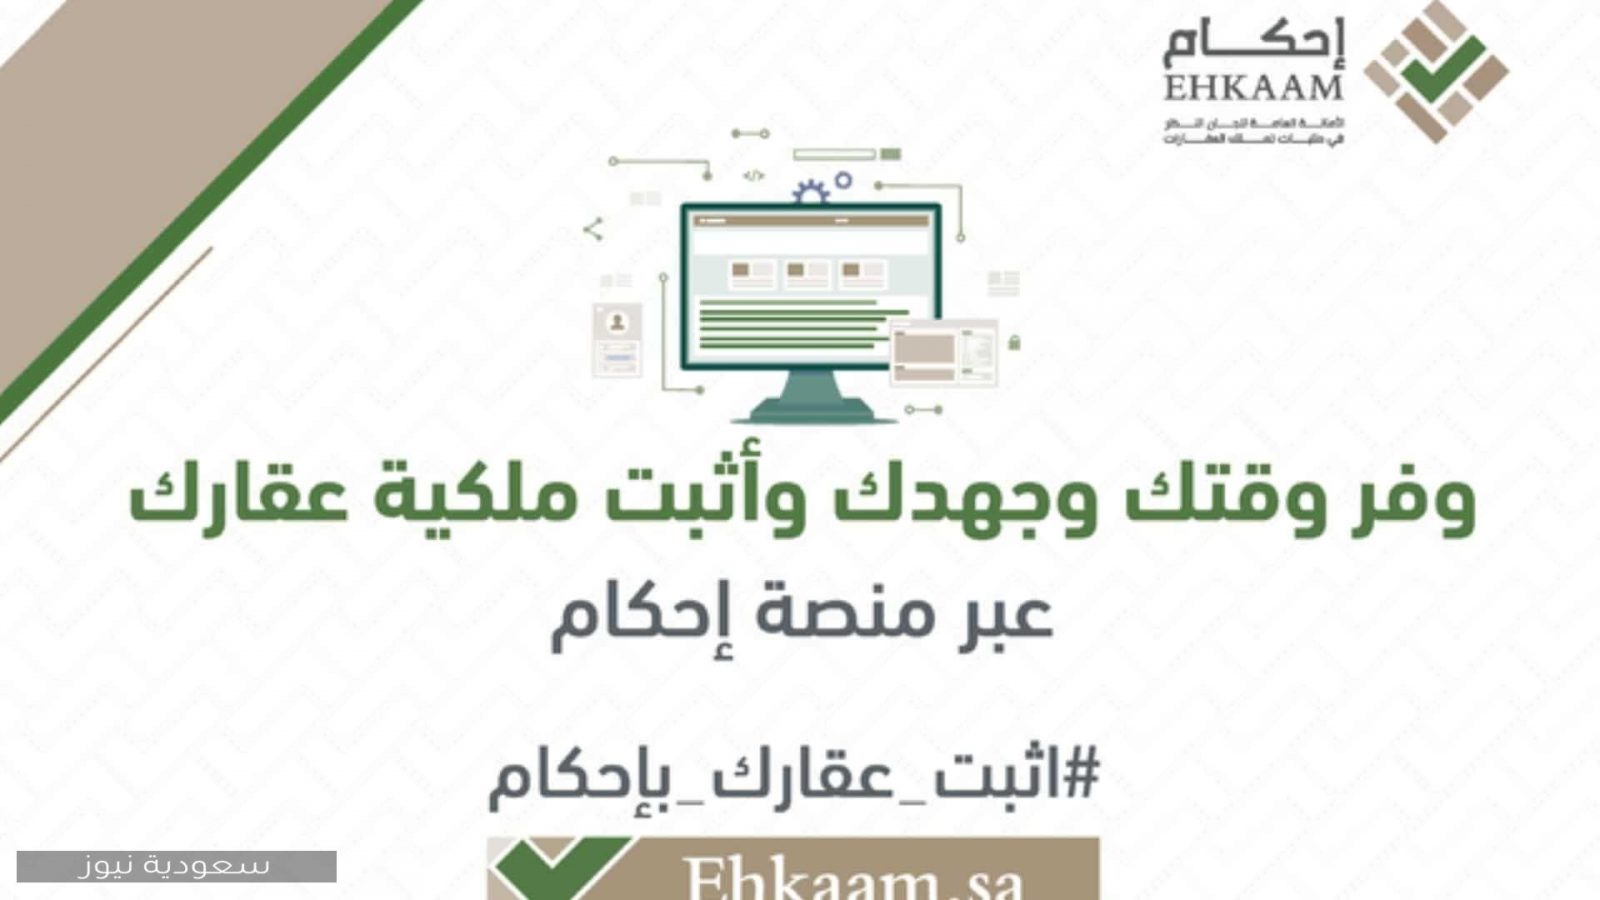 خطوات التسجيل في منصة إحكام الرقمية لتقديم طلبات التملك في المملكة العربية السعودية 1442